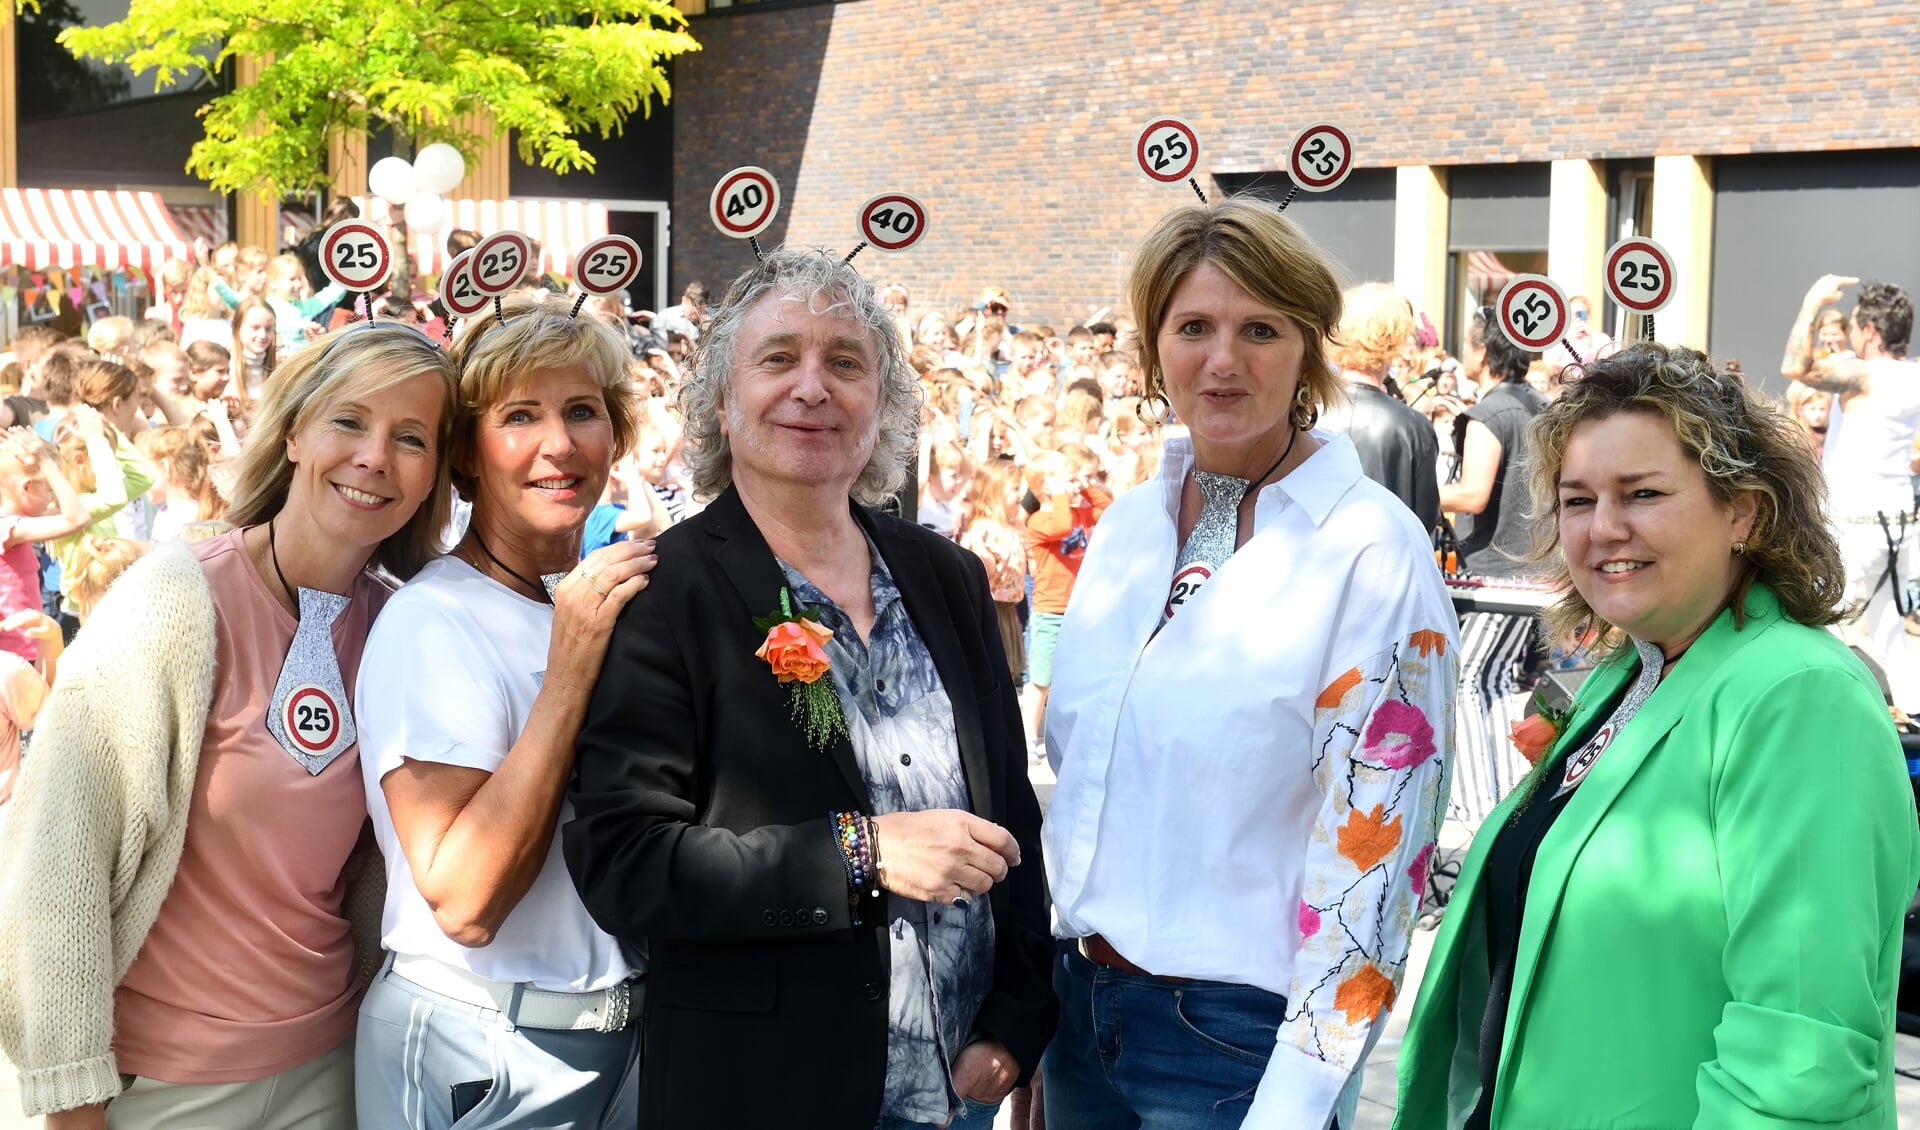 V.l.n.r.: De jubilarissen Wendy Mulder, Jeanne van de Ven, Ruud Heijnsdijk, Esther Roxs, Anne-Marie Maas werden in het zonnetje gezet